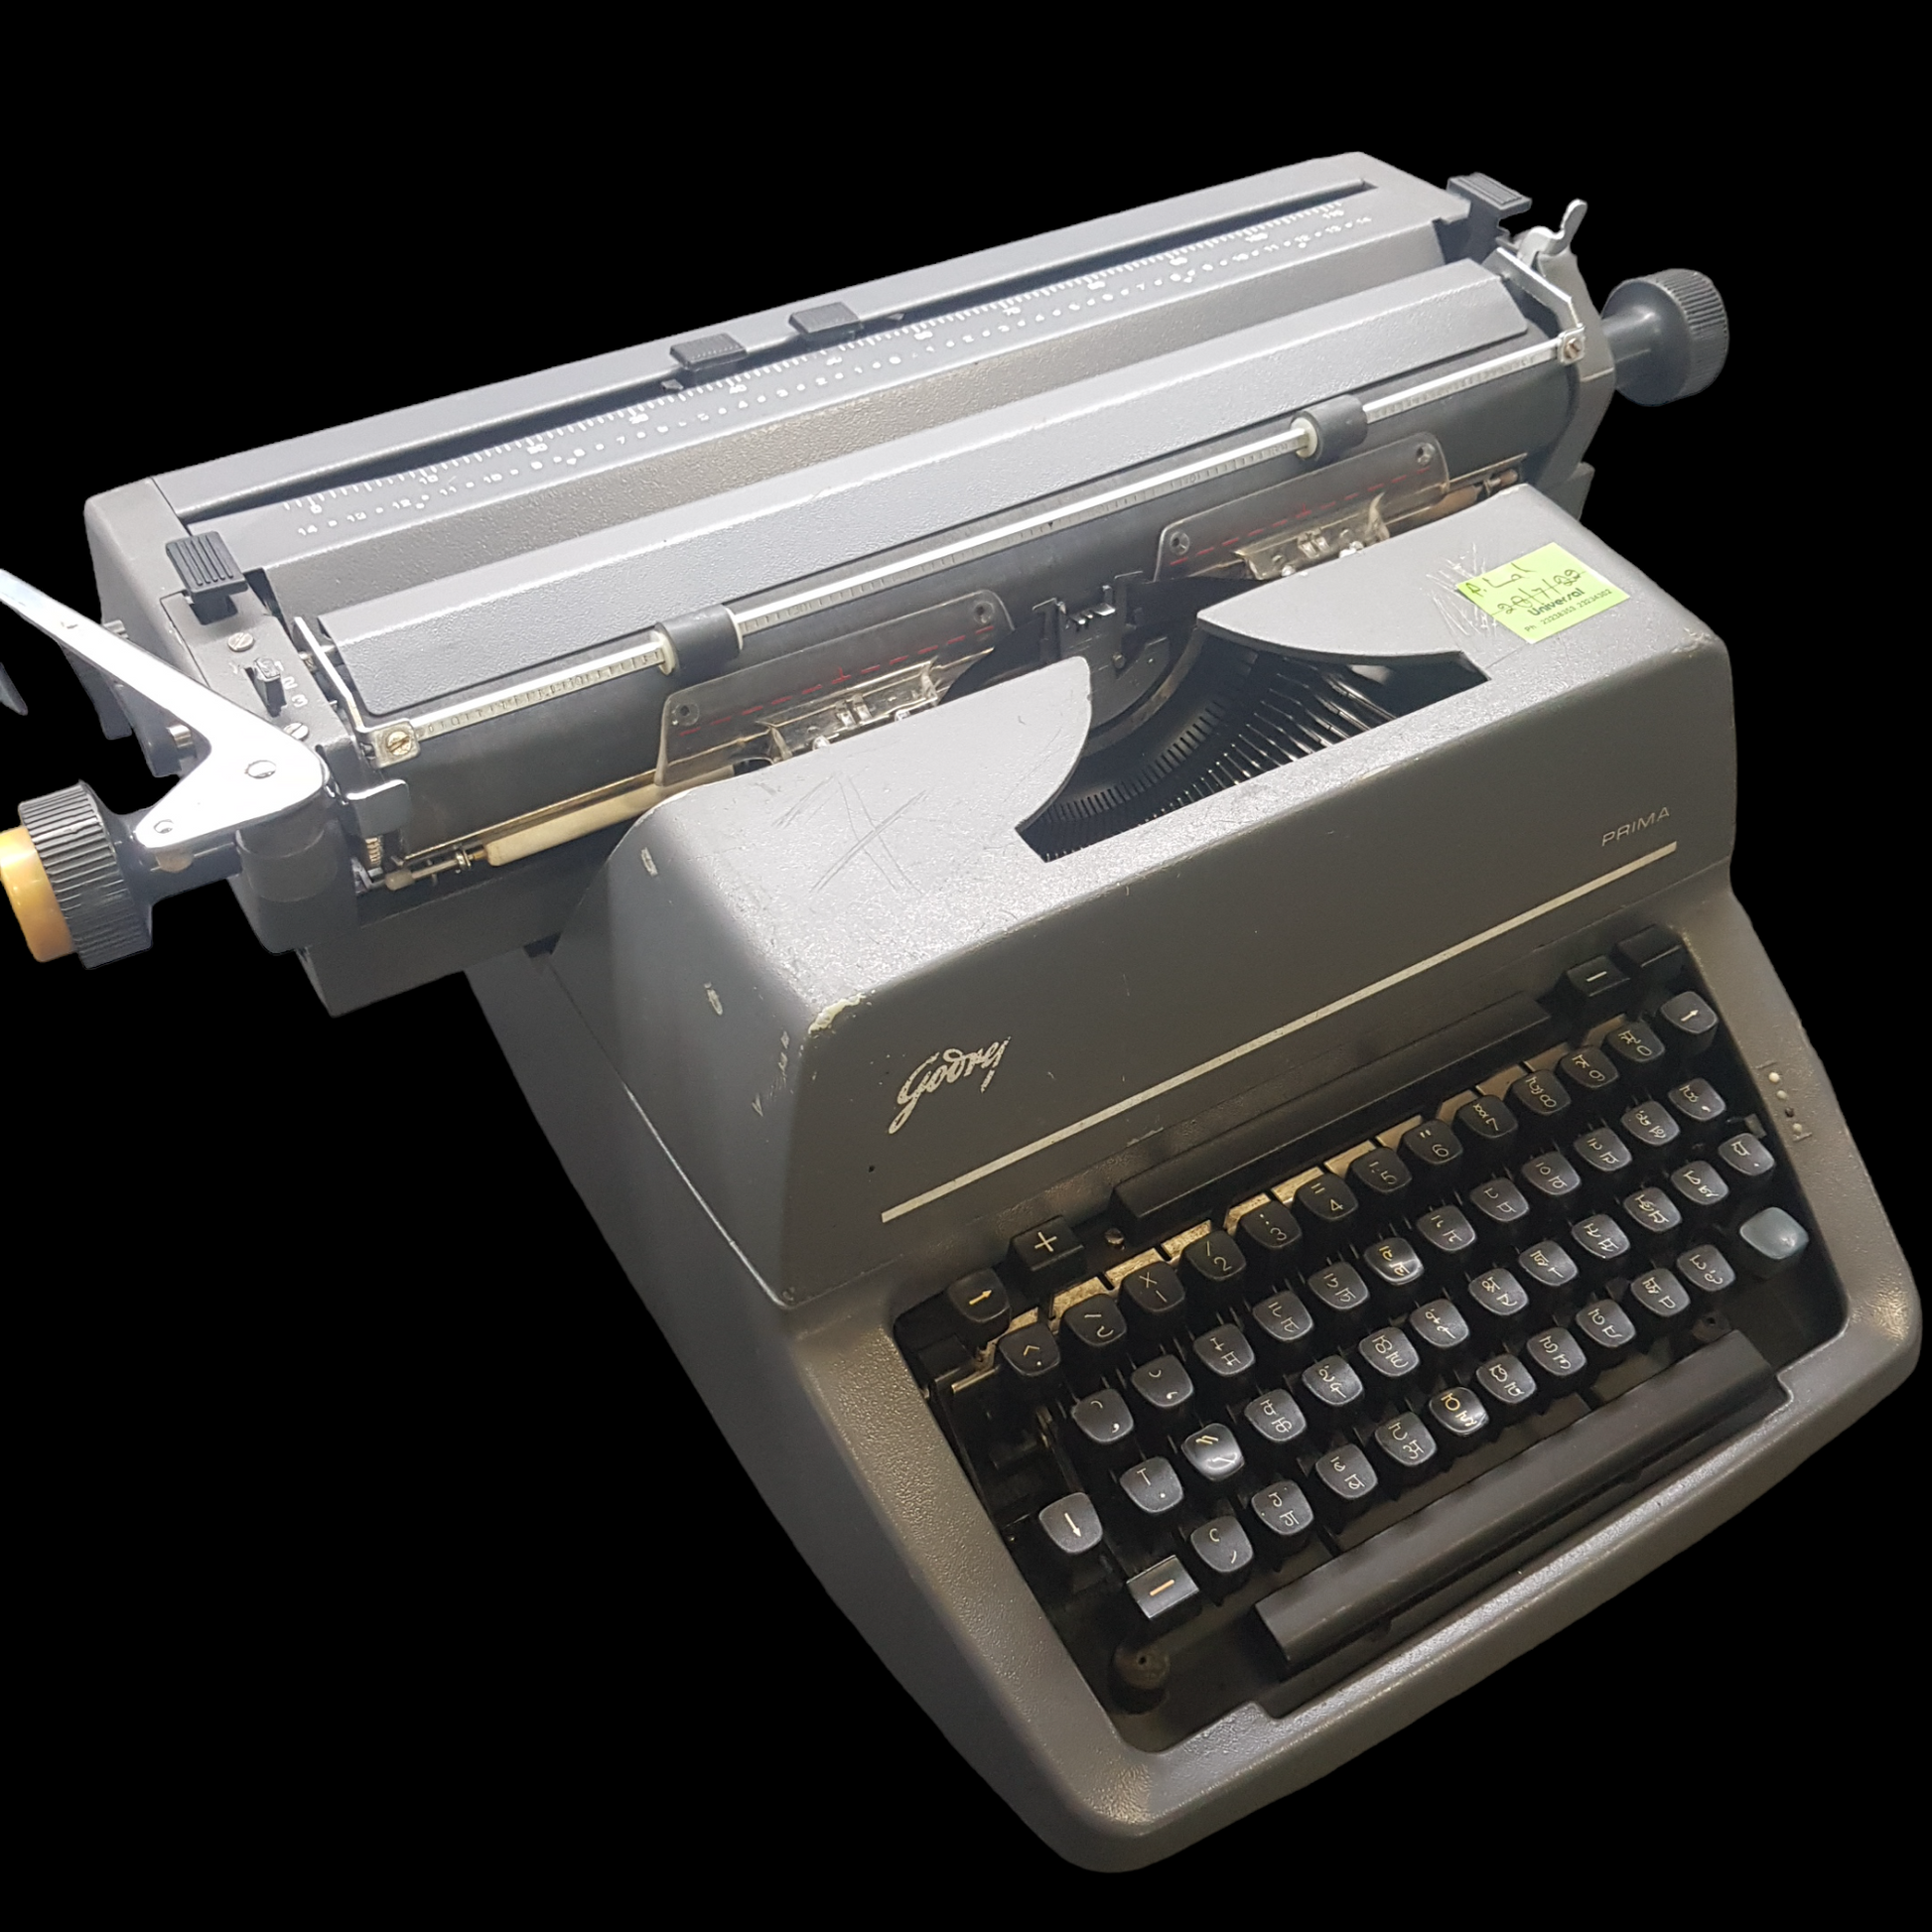 Image of Godrej Prima Hindi Keyboard Typewriter. Desktop Typewriter. Indian Made. Available from universaltypewritercompany.in